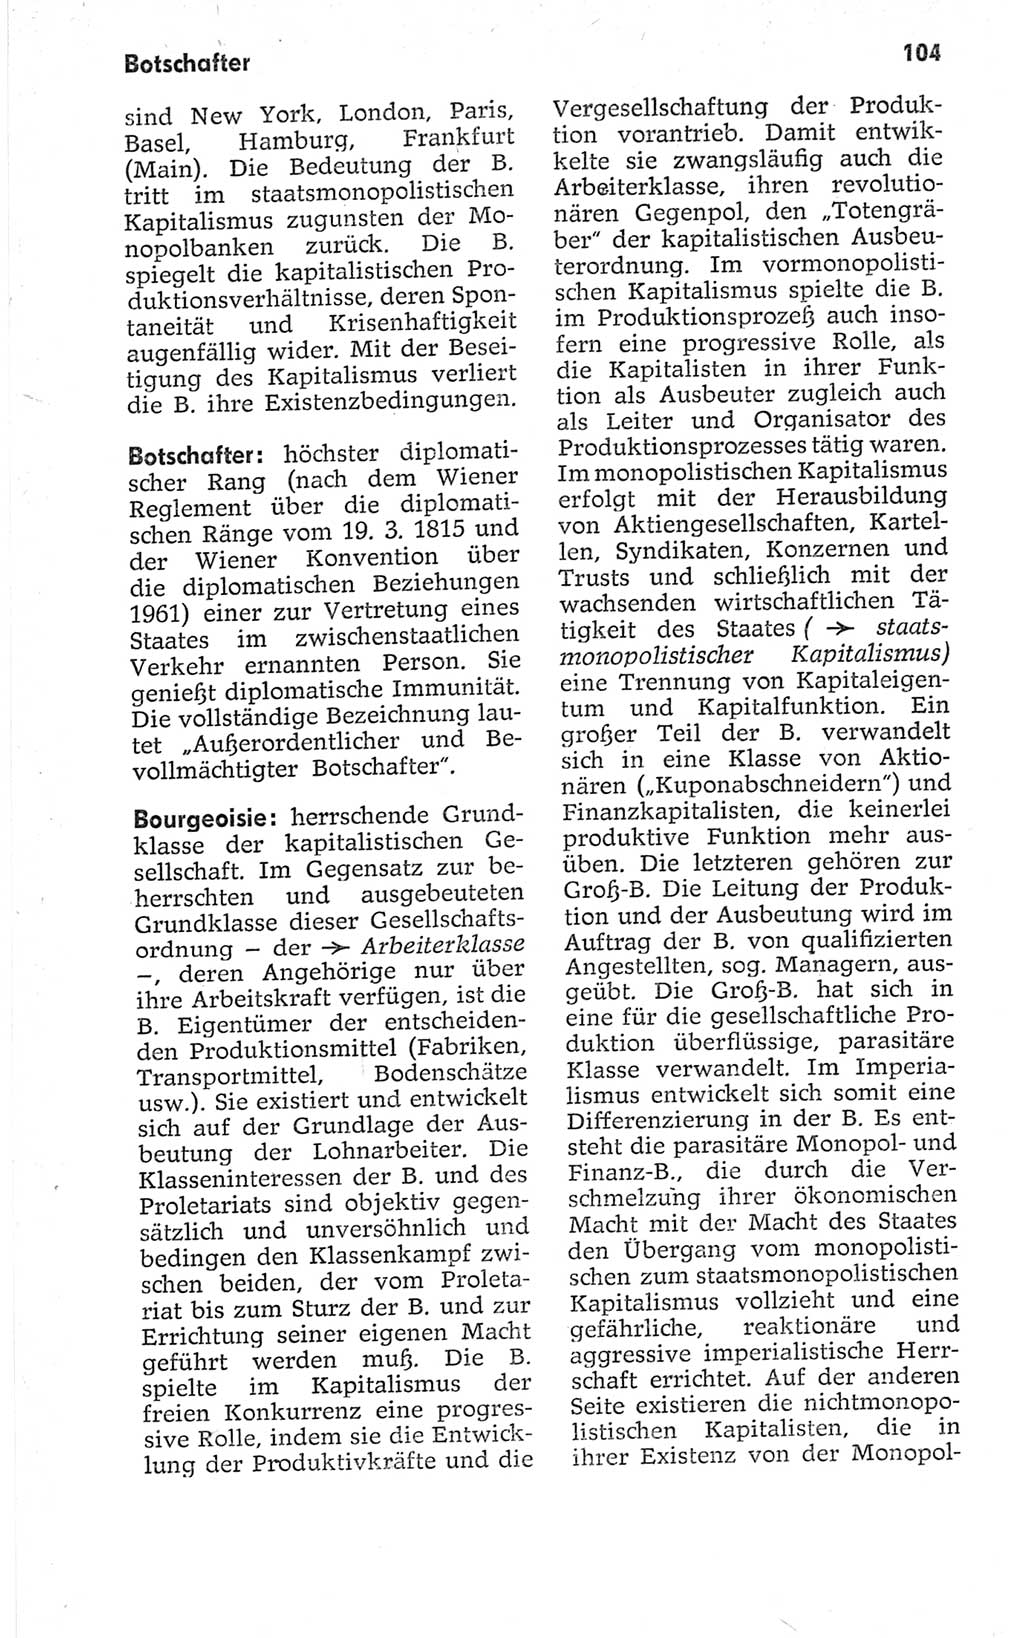 Kleines politisches Wörterbuch [Deutsche Demokratische Republik (DDR)] 1967, Seite 104 (Kl. pol. Wb. DDR 1967, S. 104)